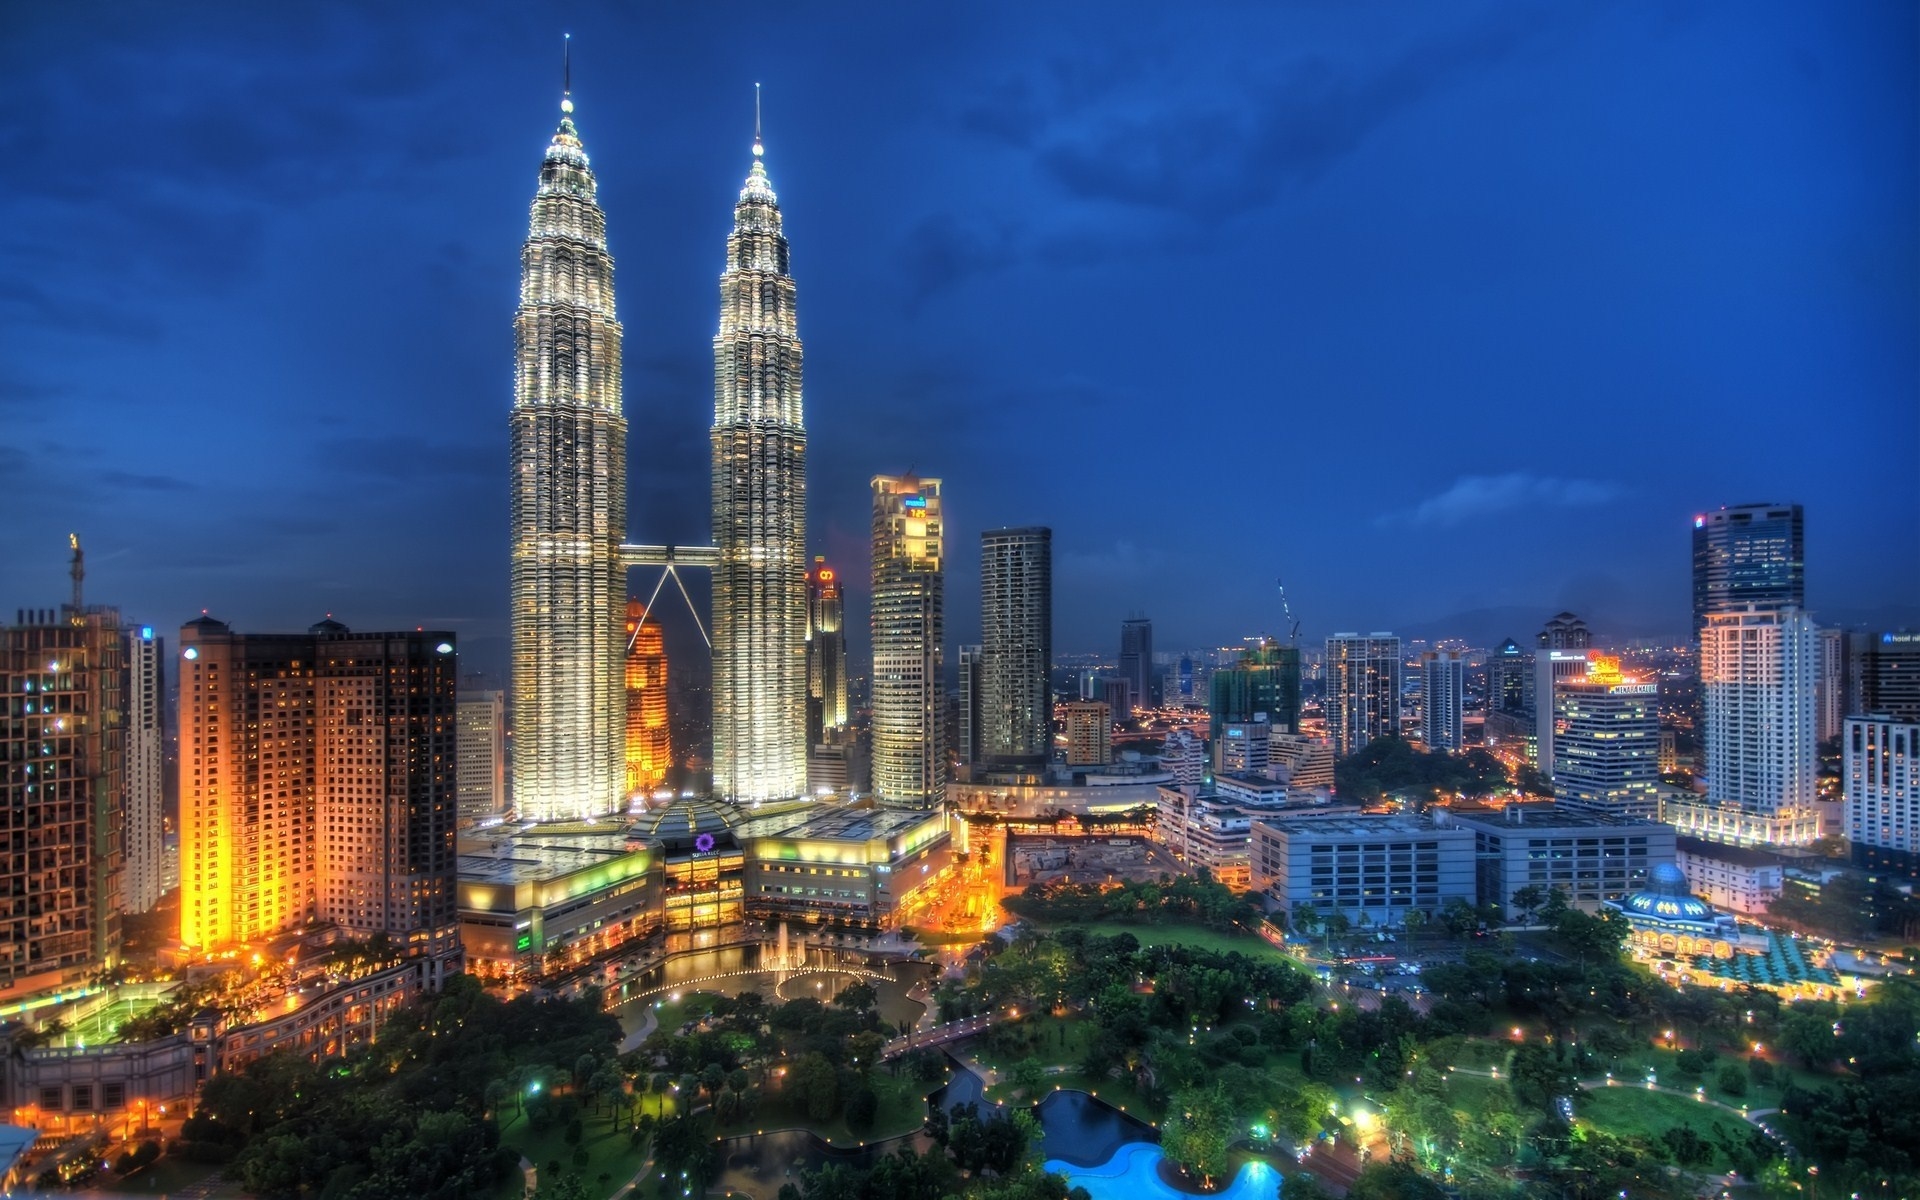 Картинки Куала-лумпур, малайзия, небоскребы, ночь, огни города фото и обои на рабочий стол